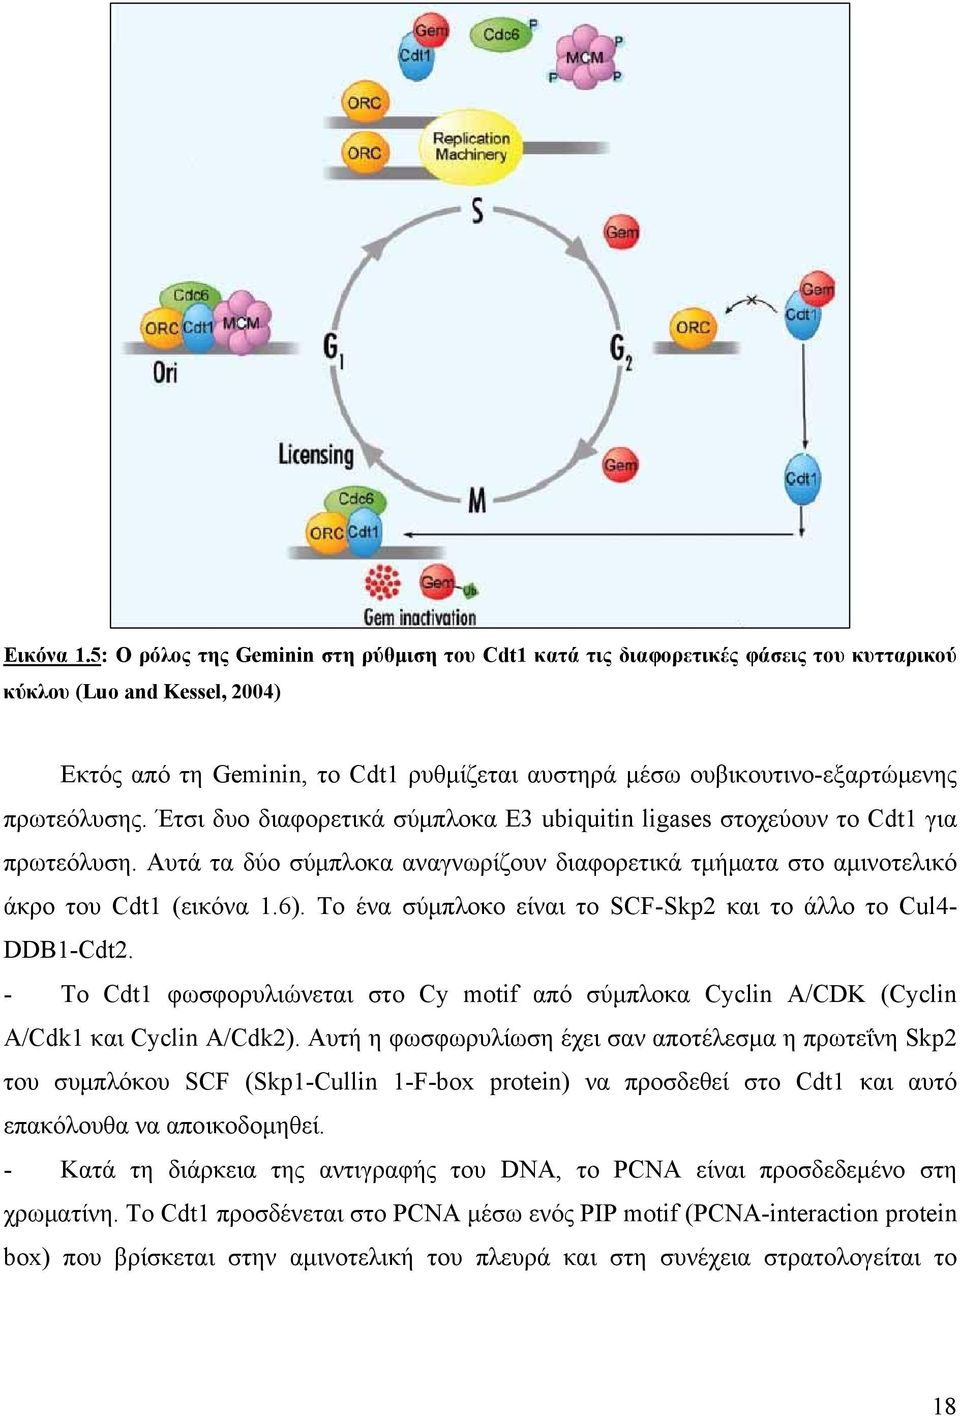 πρωτεόλυσης. Έτσι δυο διαφορετικά σύμπλοκα E3 ubiquitin ligases στοχεύουν το Cdt1 για πρωτεόλυση. Αυτά τα δύο σύμπλοκα αναγνωρίζουν διαφορετικά τμήματα στο αμινοτελικό άκρο του Cdt1 (εικόνα 1.6).